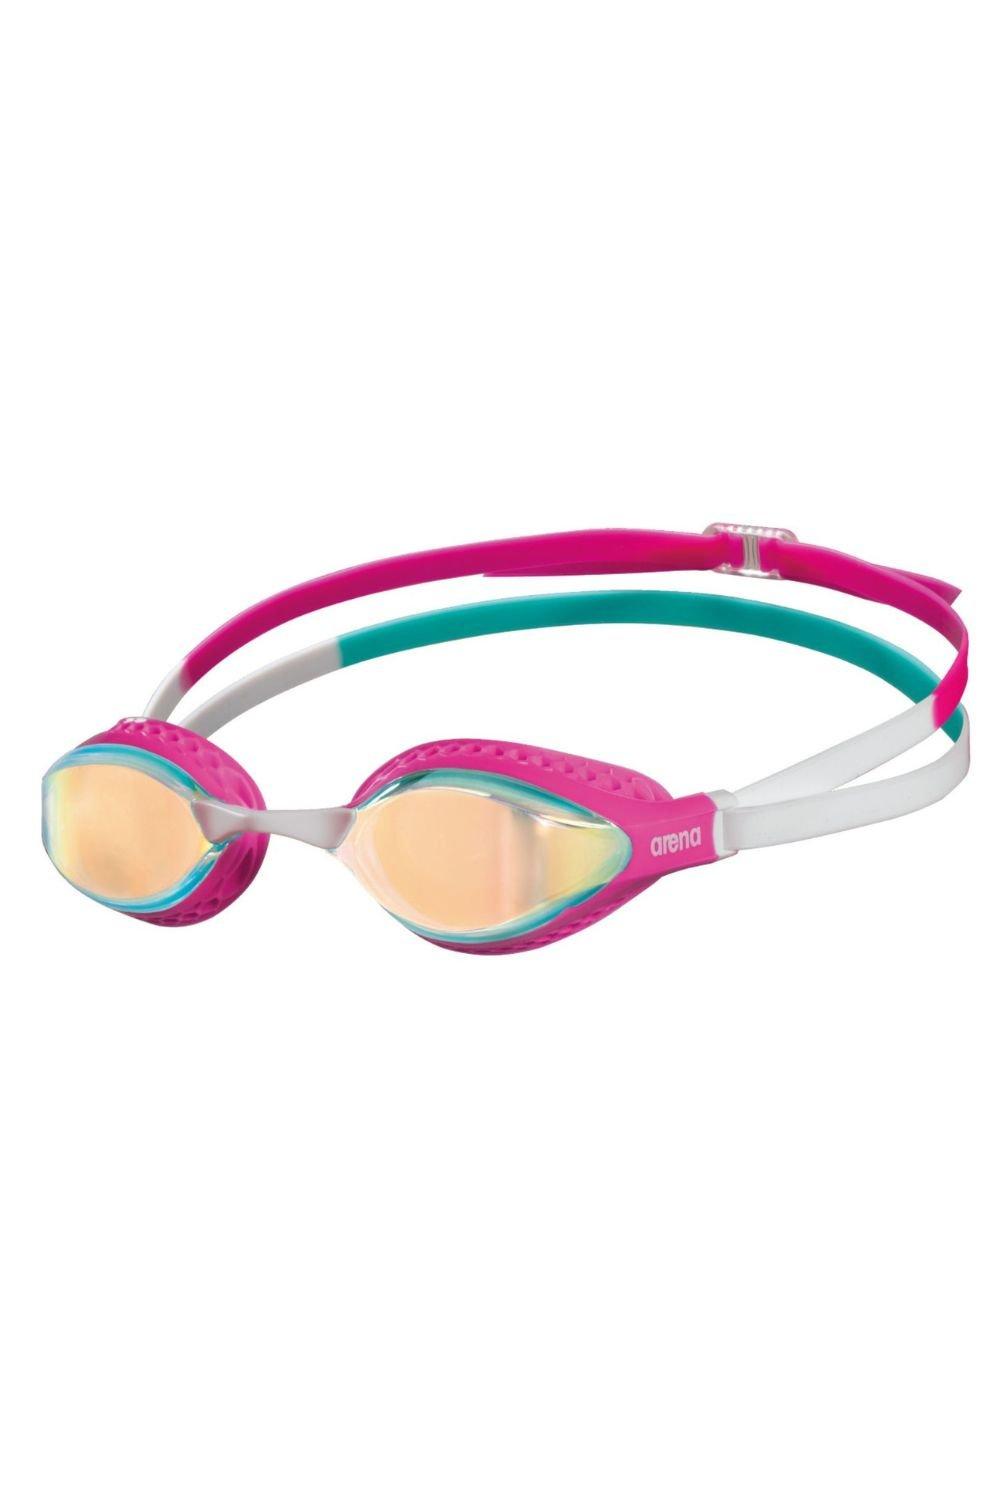 Очки для плавания с зеркалом Airspeed Arena, розовый очки для плавания водонепроницаемые противотуманные hd очки для плавания с градусом очки для дайвинга для женщин